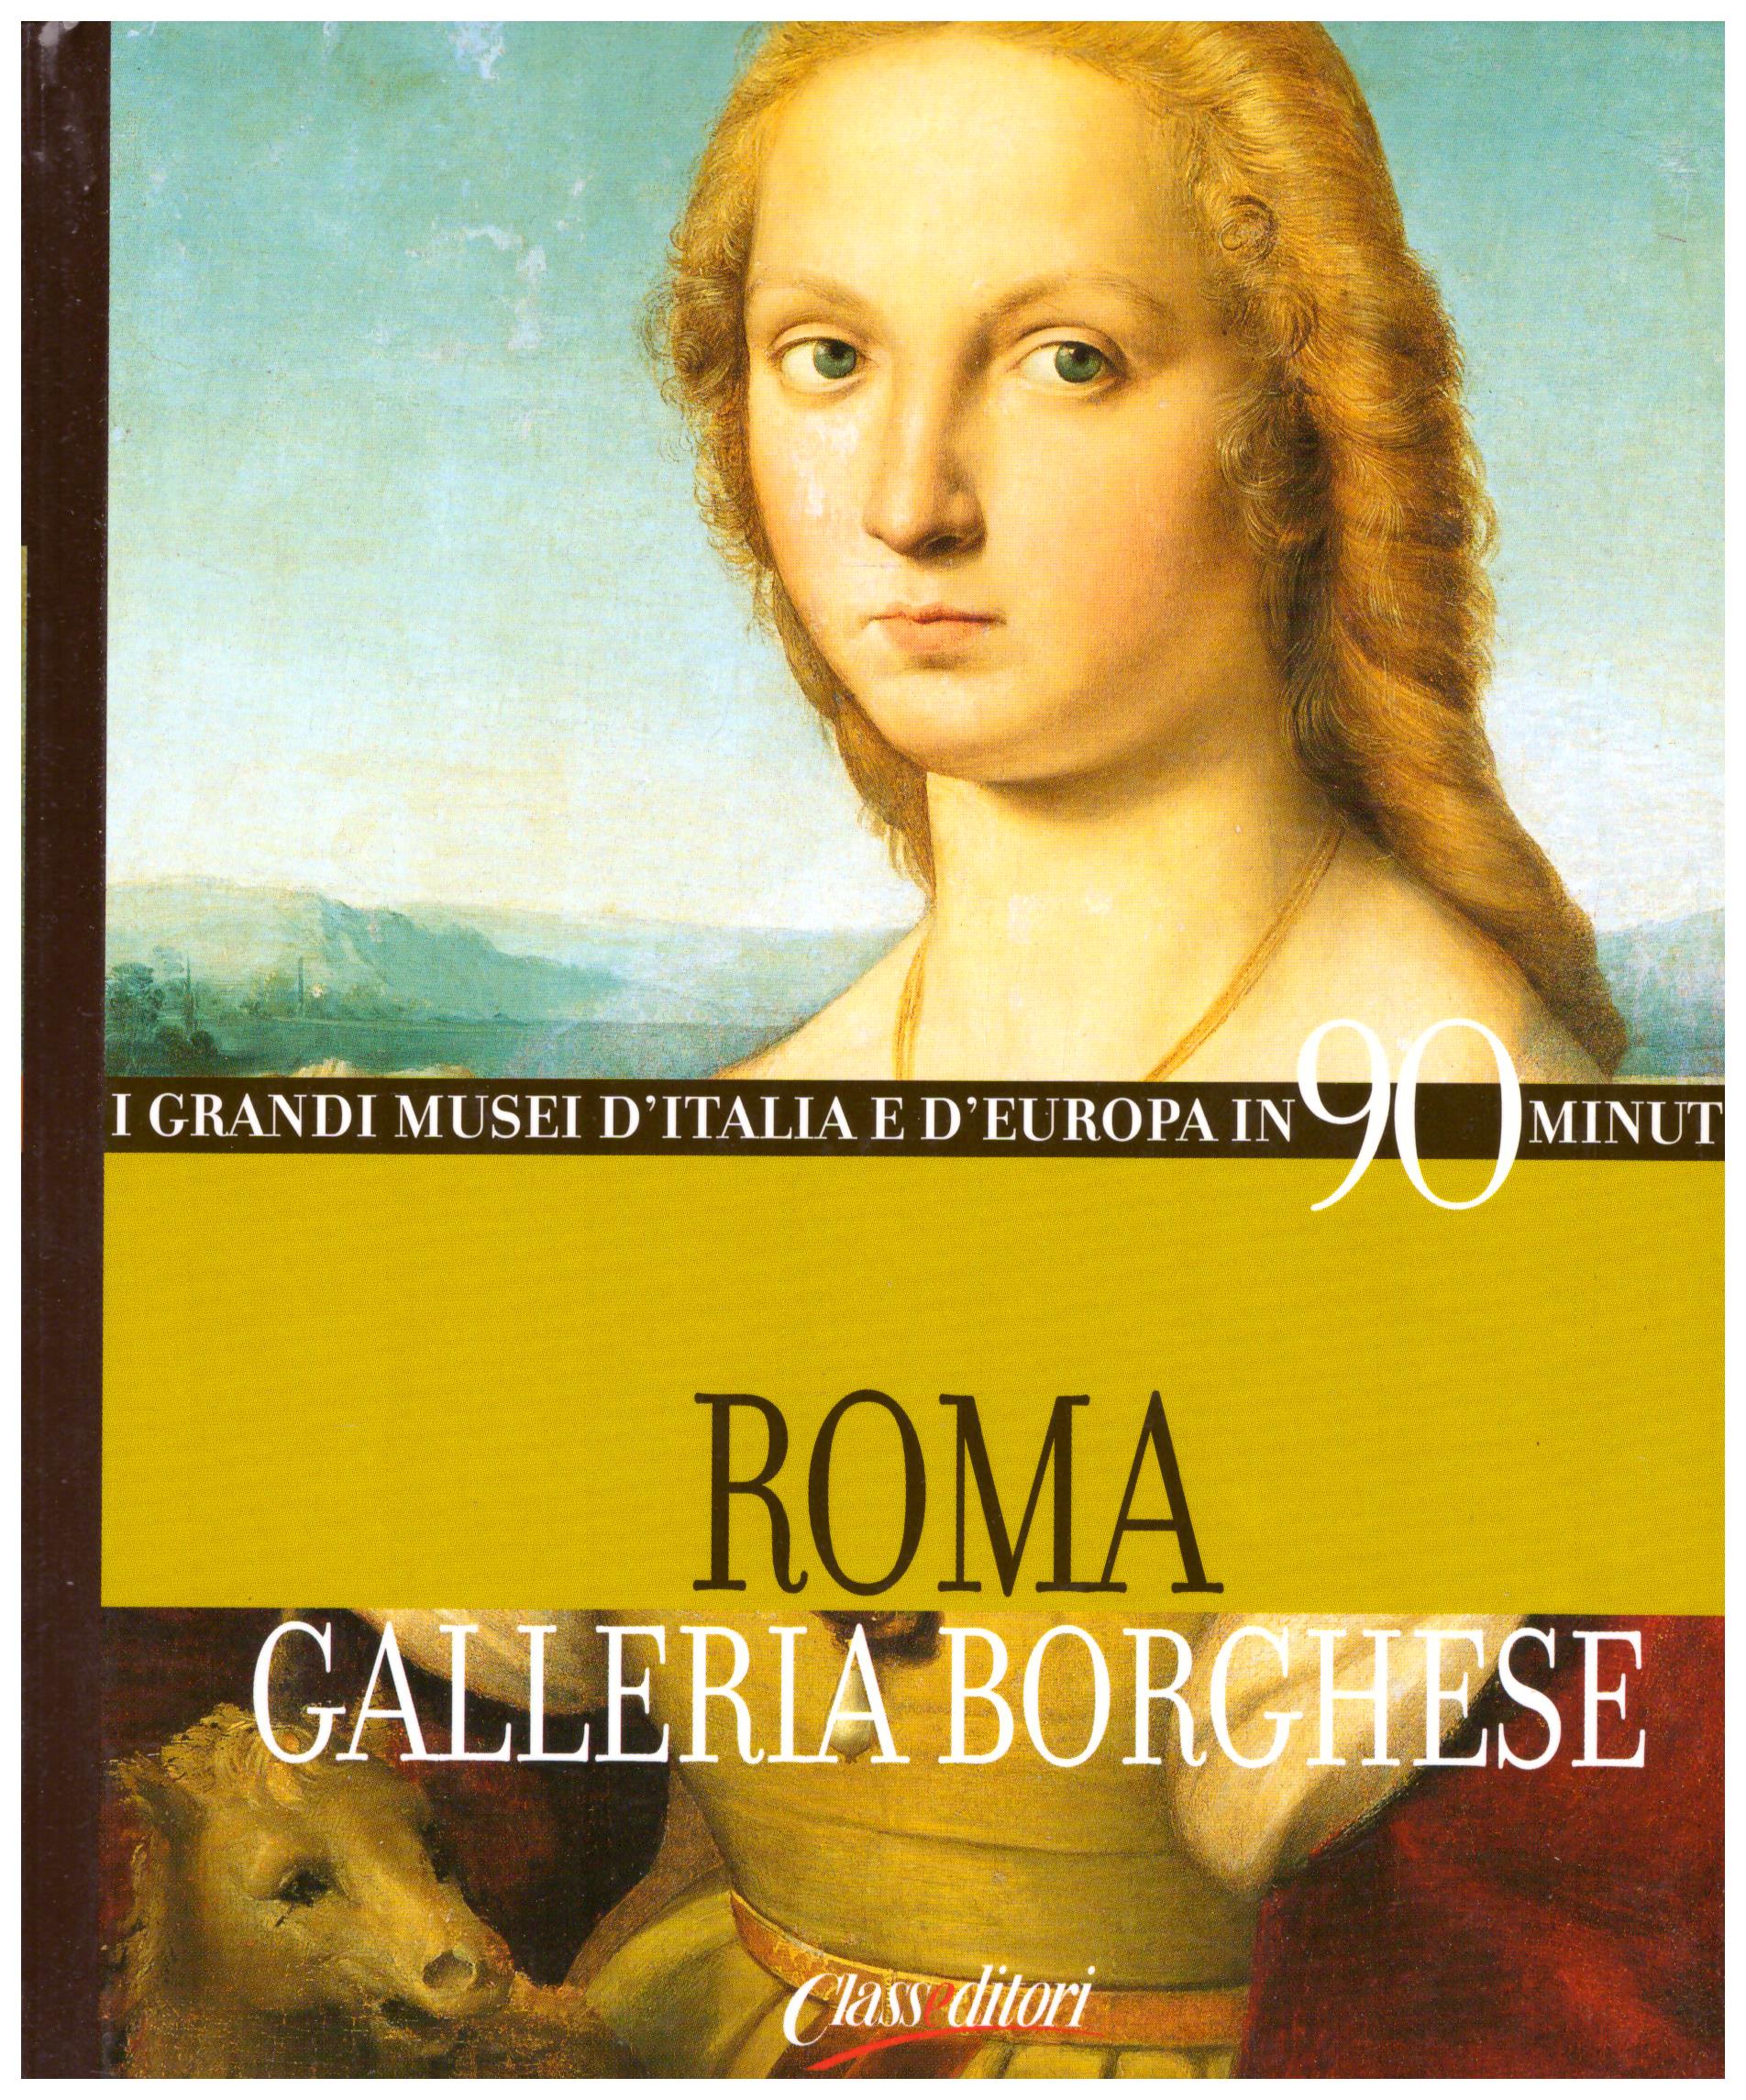 Titolo: I grandi musei d'Italia e d'Europa in 90 minuti, Roma Galleria Borghese Autore: AA.VV.  Editore: Classeditori, 2004